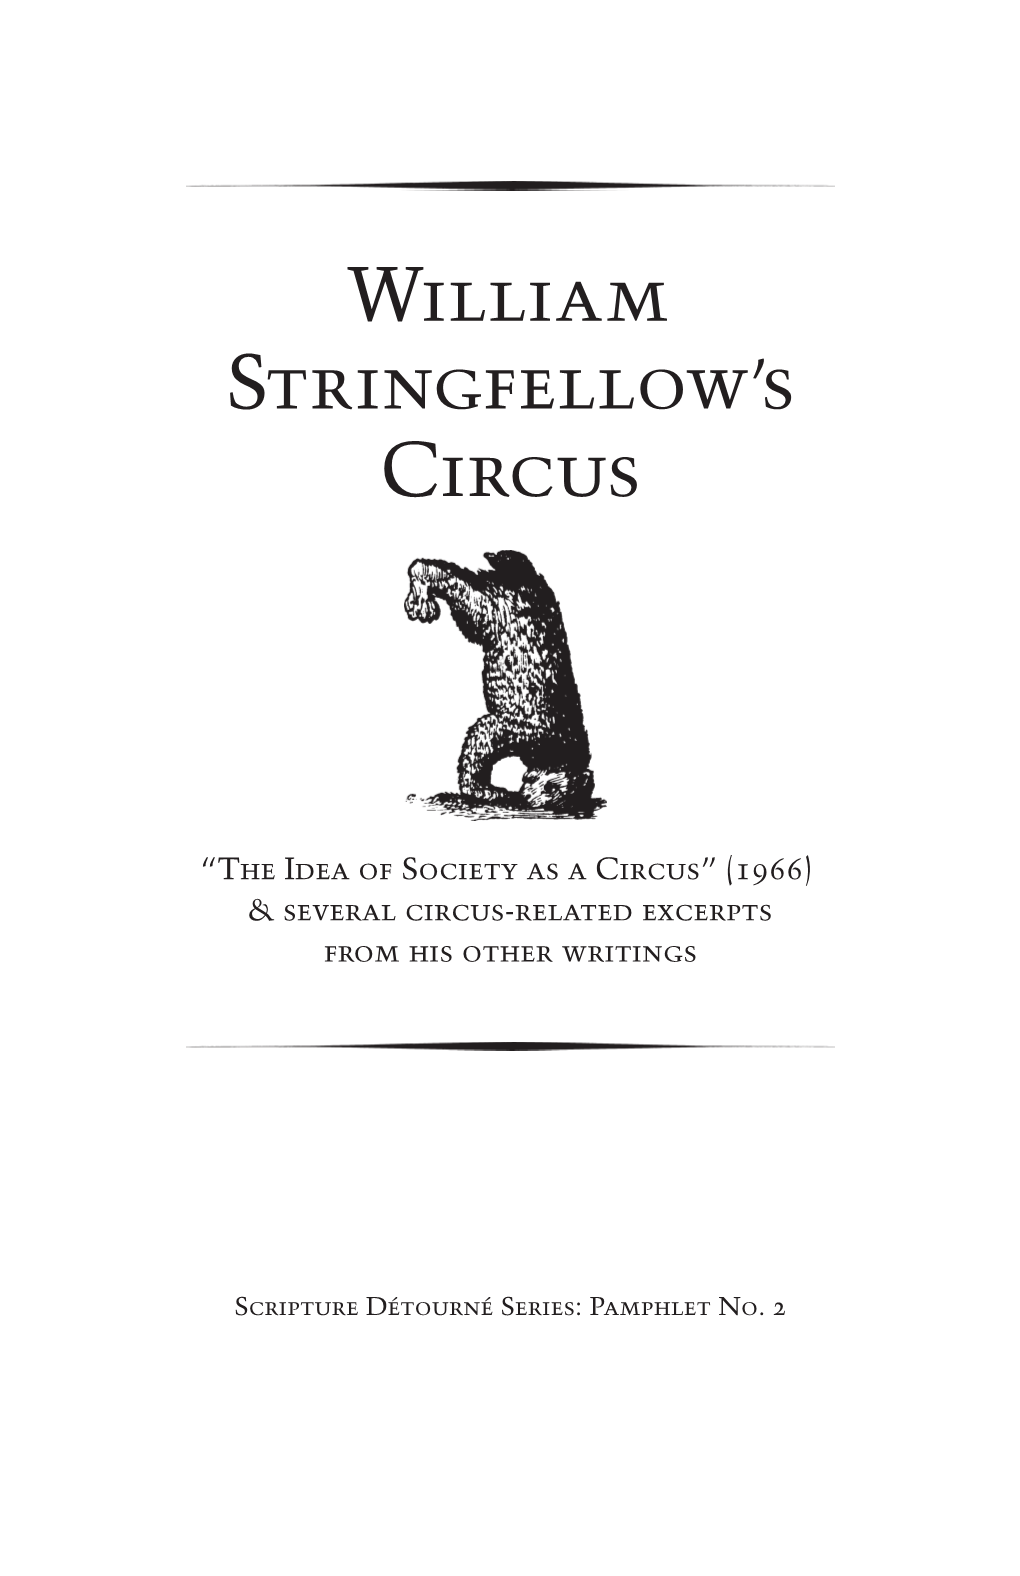 William Stringfellow's Circus